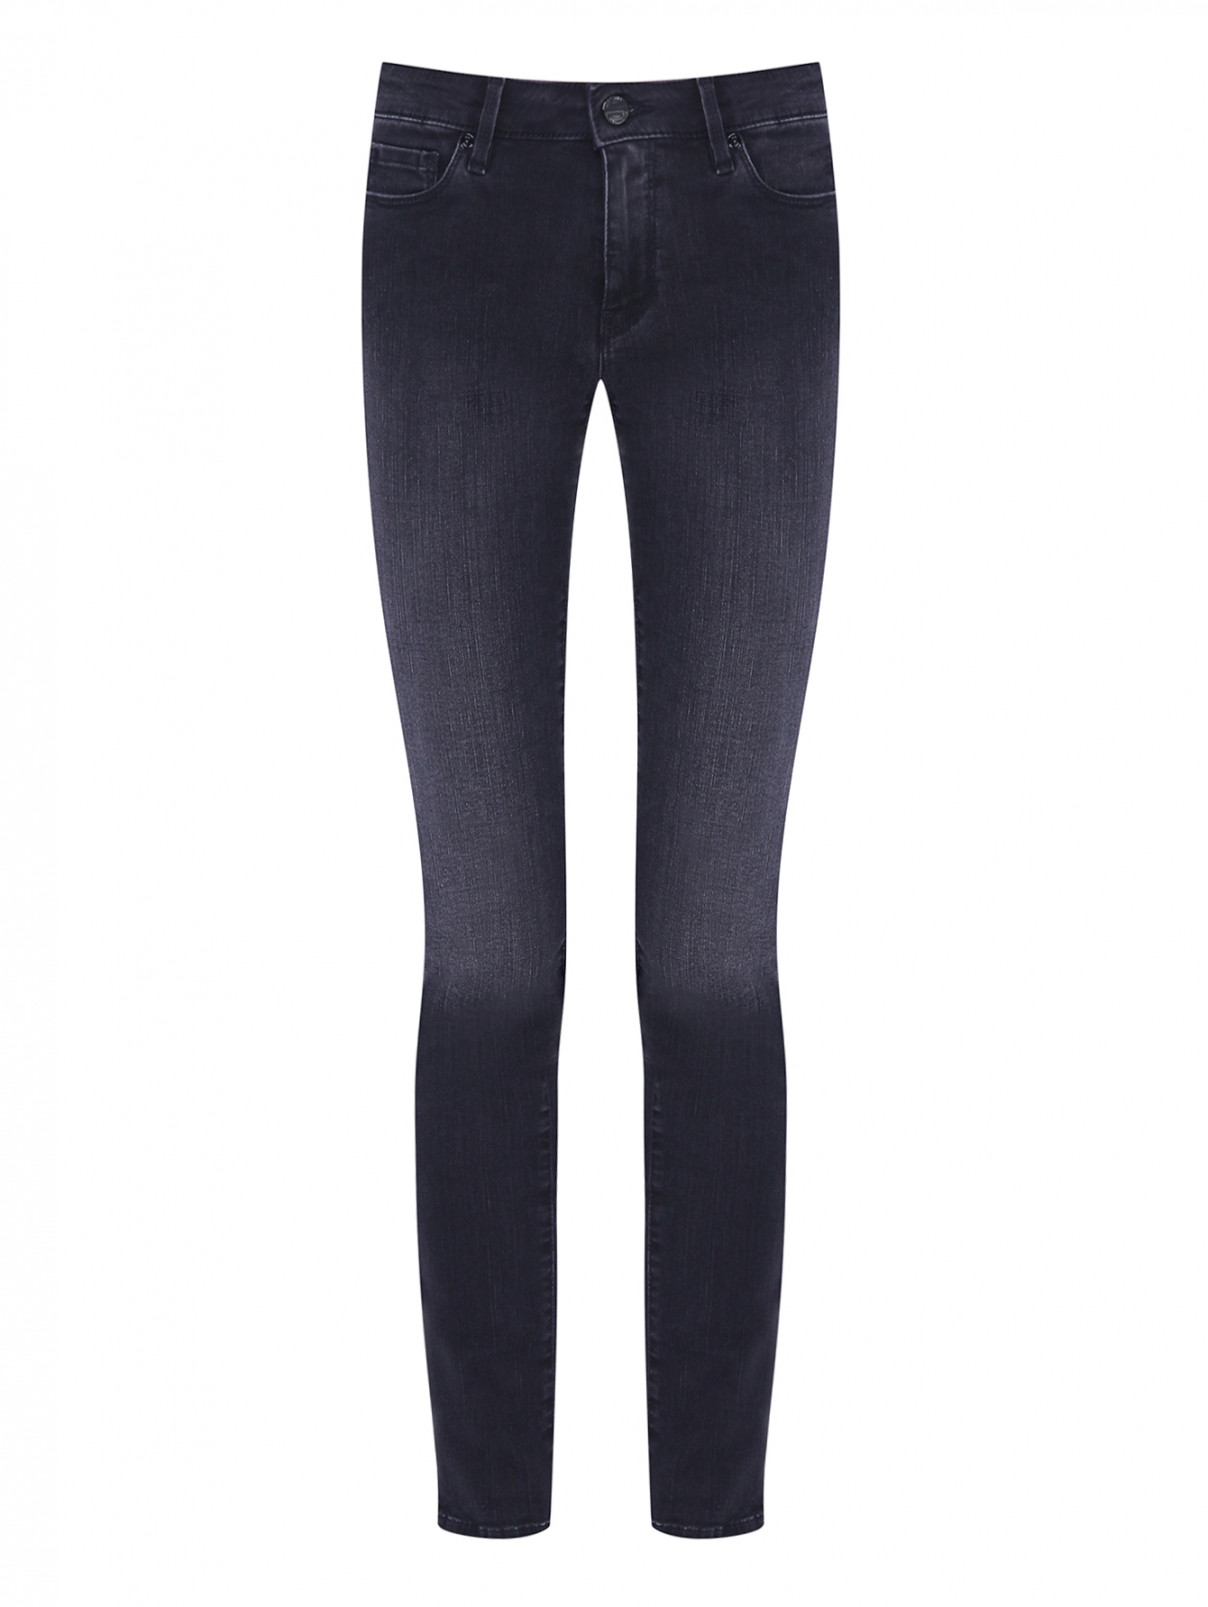 Зауженнные джинсы с декором Love Moschino  –  Общий вид  – Цвет:  Серый